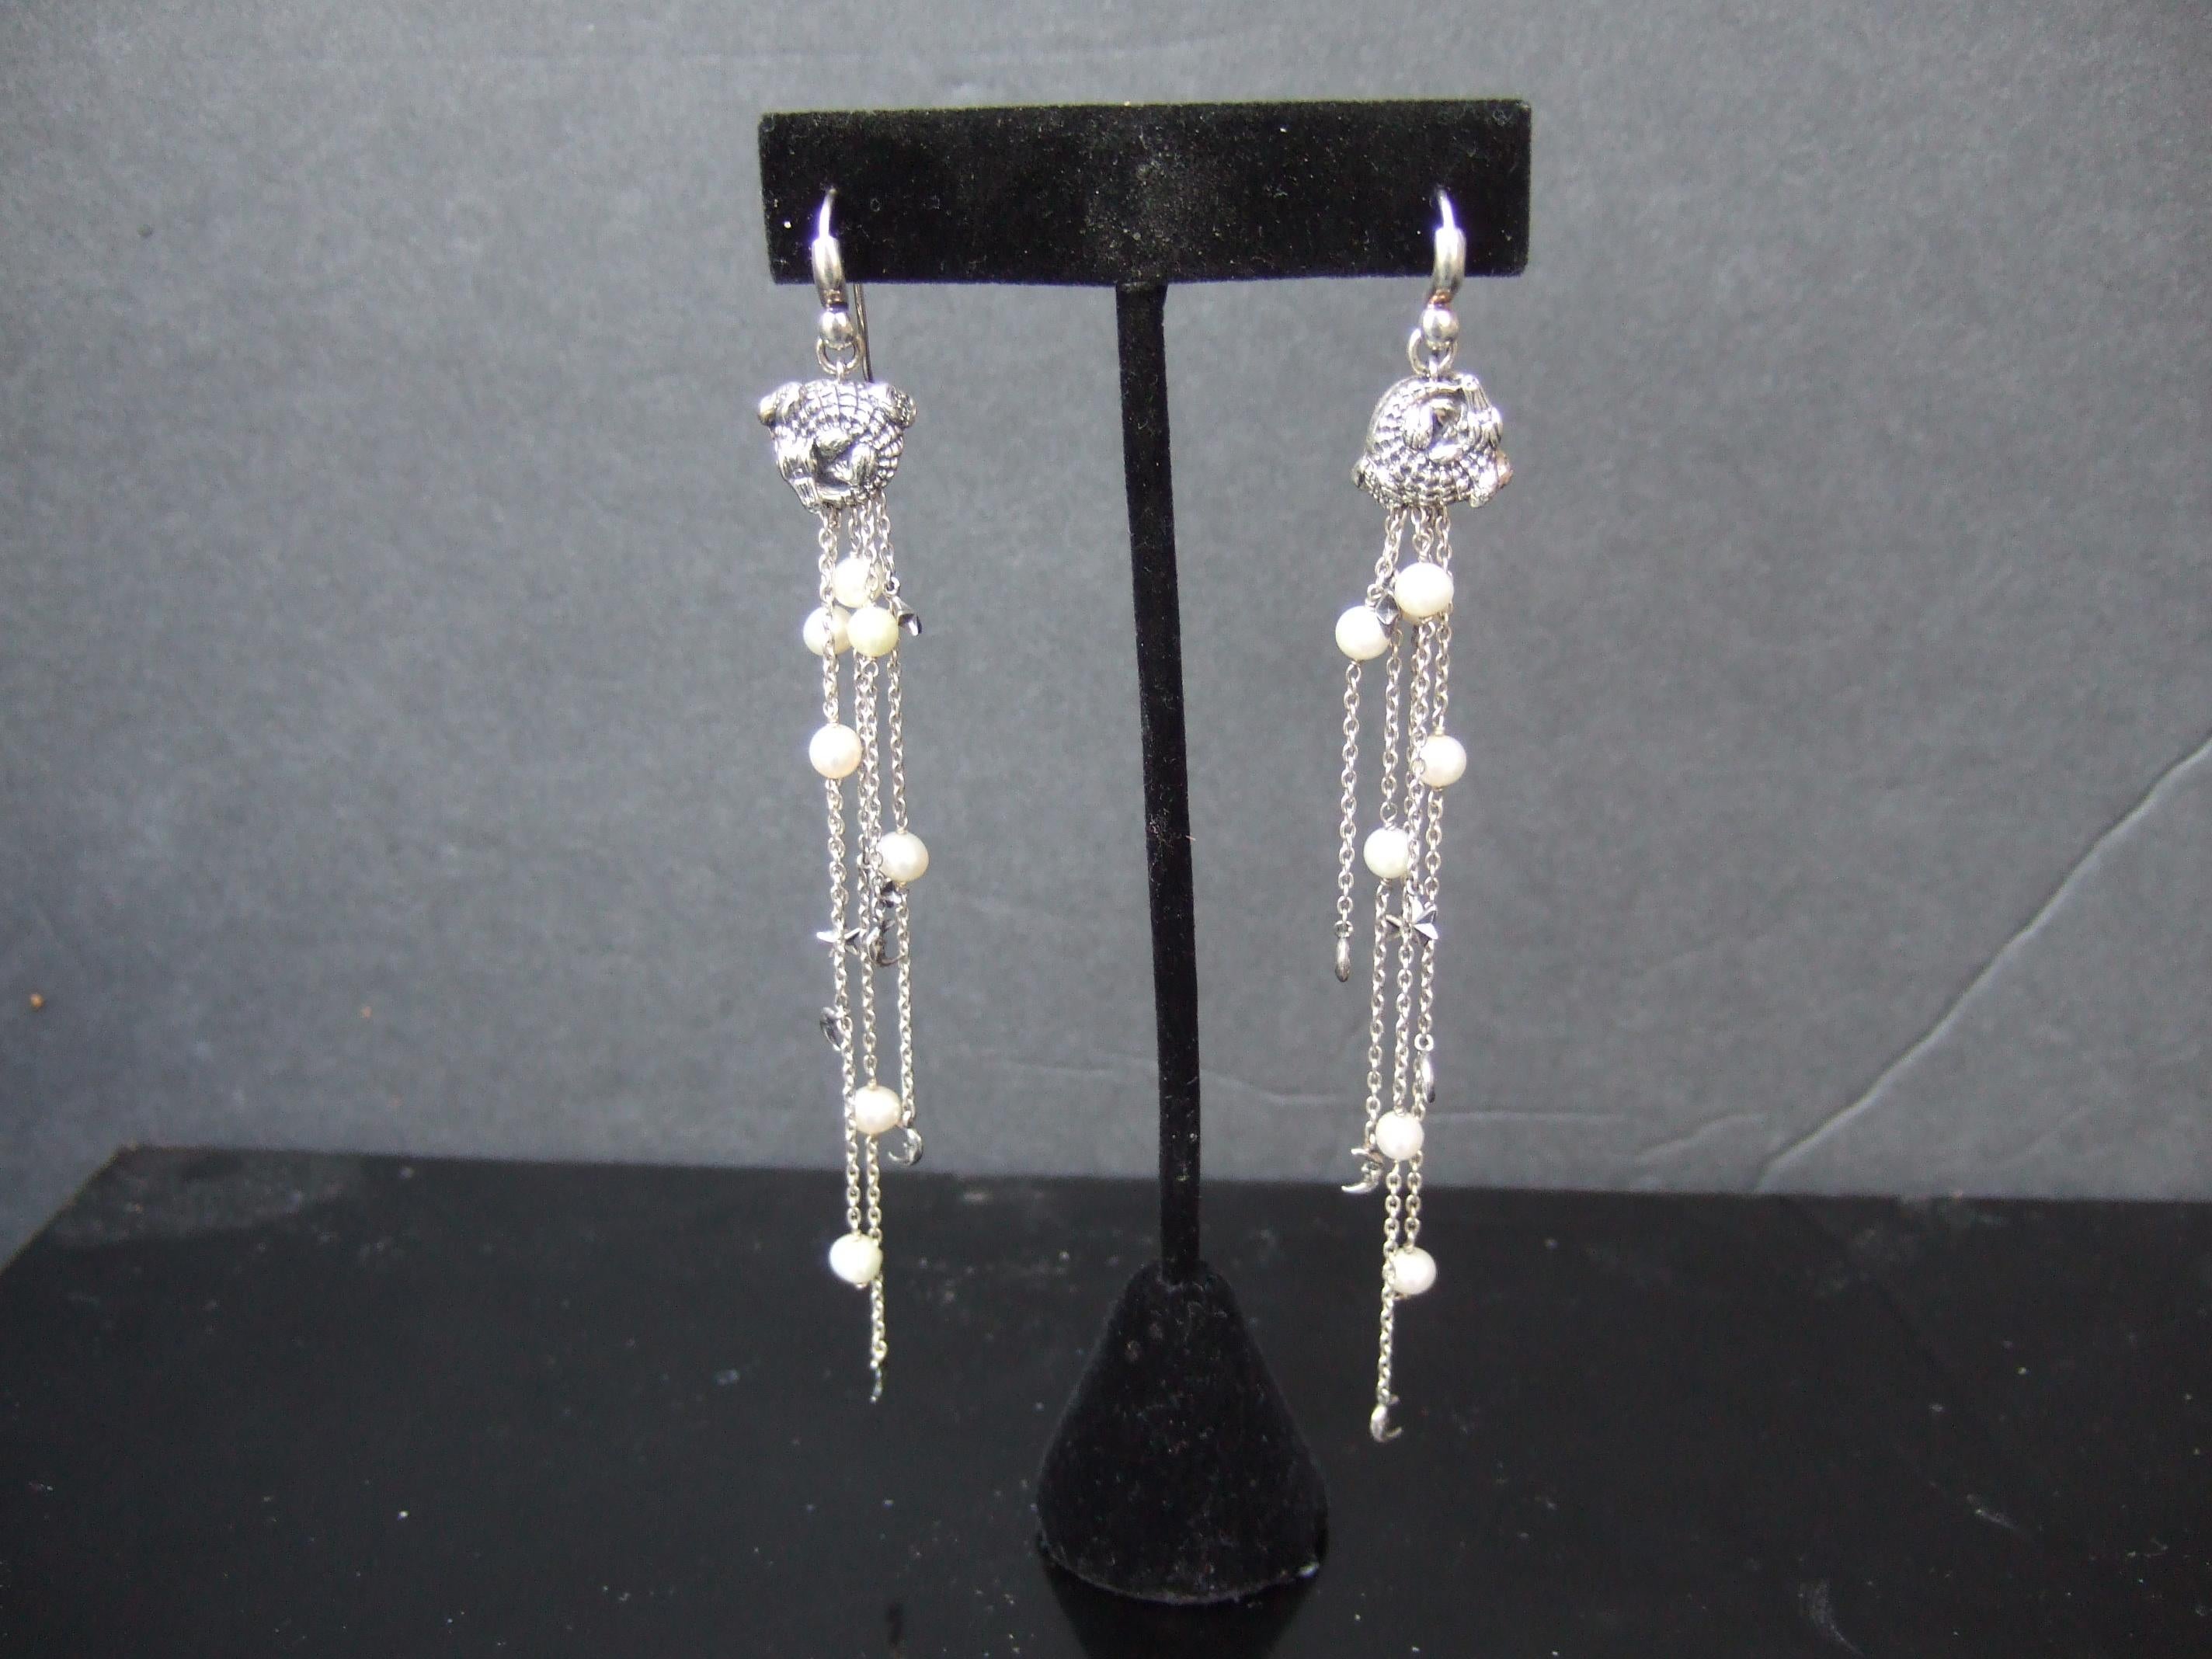 Barry Kieselstein-Cord Sterling Silver Dangling Charm Statement Earrings 2004 For Sale 7